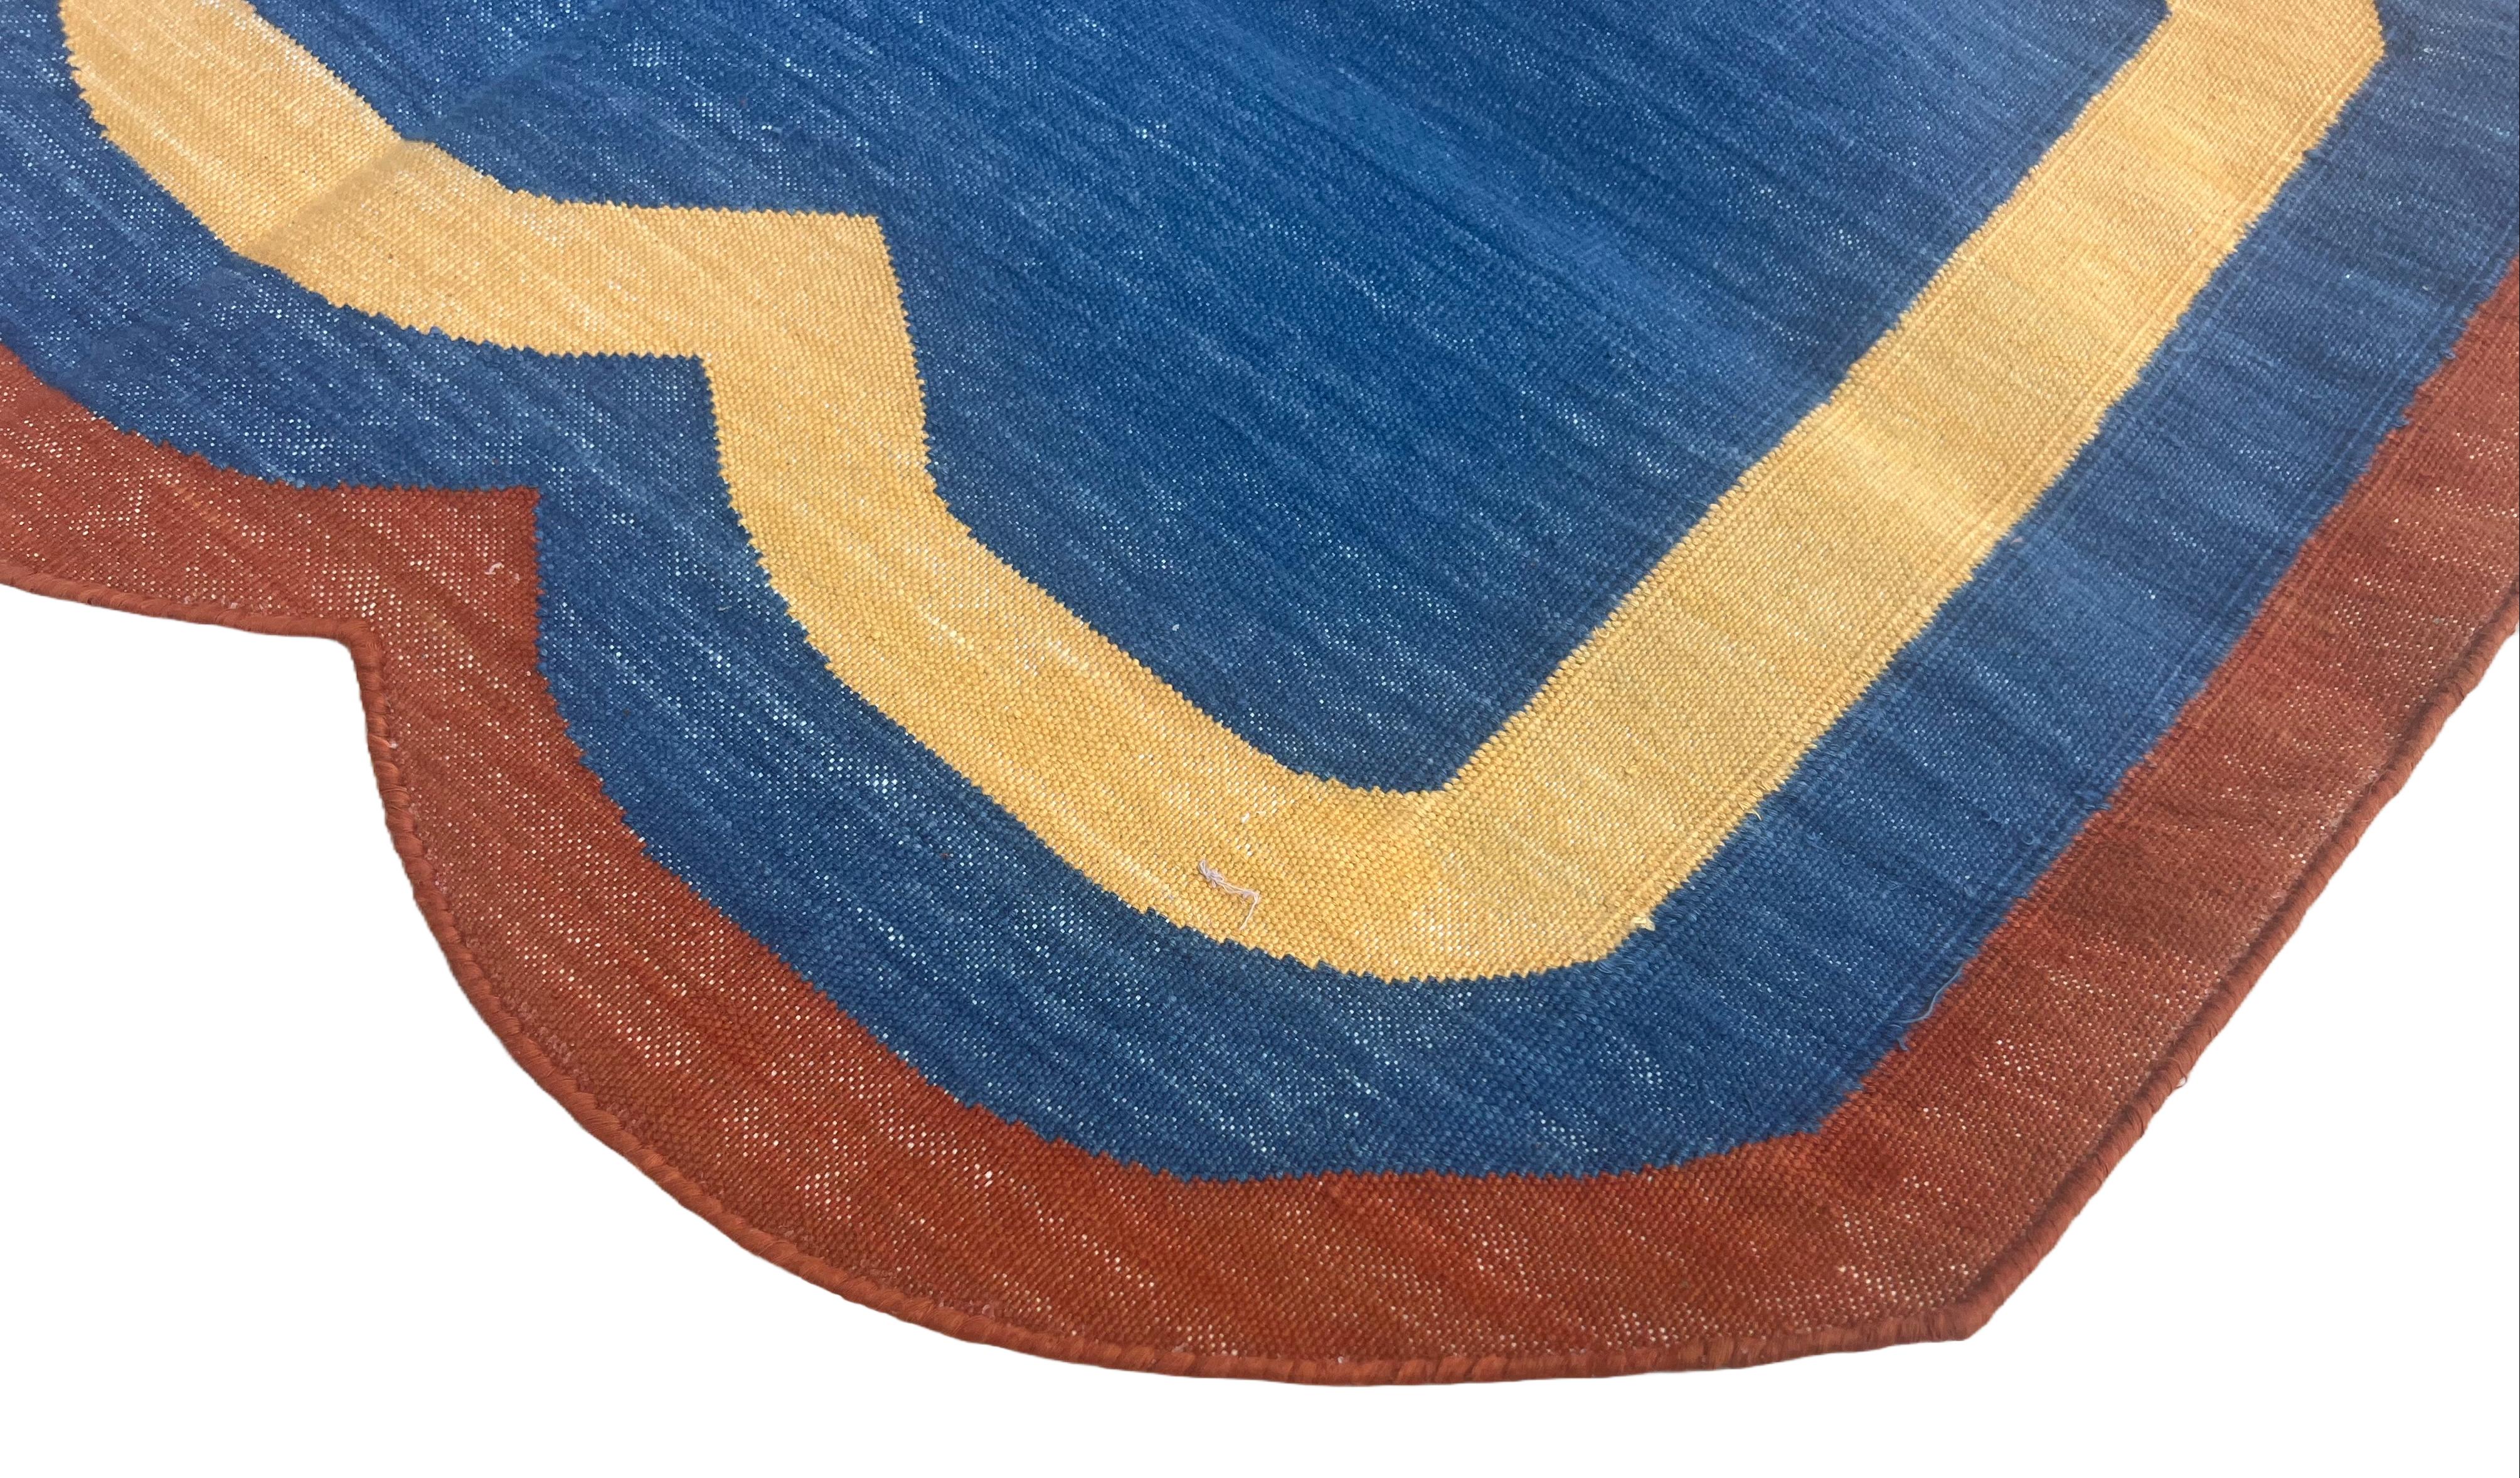 Baumwolle pflanzlich gefärbt  Indigoblauer, gelber und terrakottaroter indischer Dhurrie-Teppich mit Wellenmuster - 2'x3' (60x90cm) 

Diese speziellen flachgewebten Dhurries werden aus 15-fachem Garn aus 100% Baumwolle handgewebt. Aufgrund der